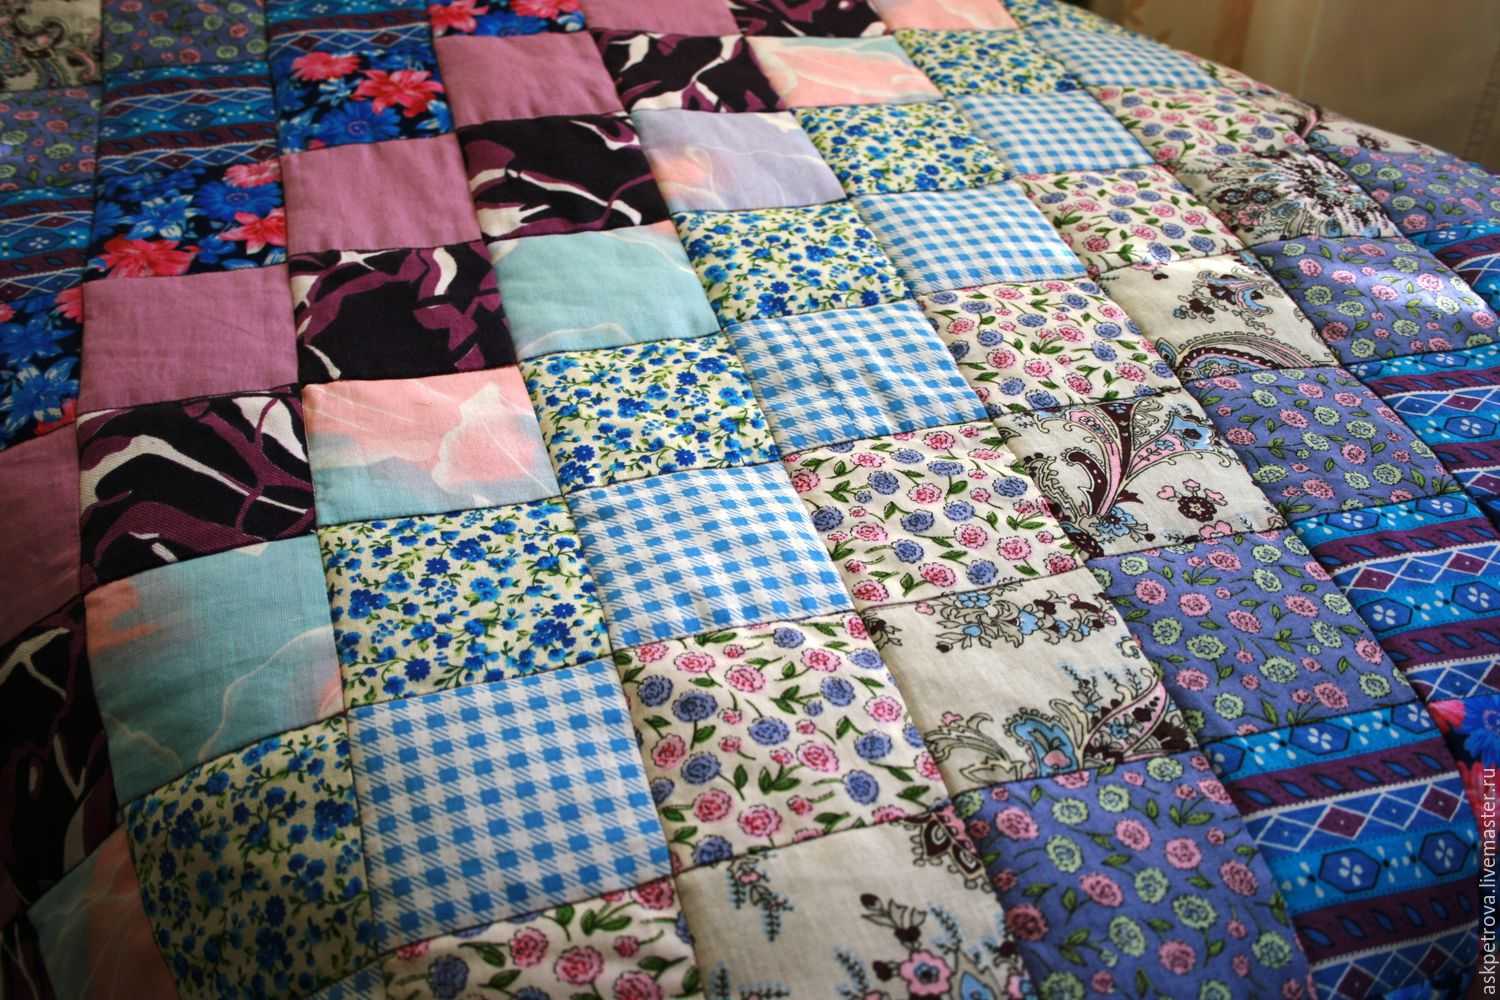 Лоскутное одеяло своими руками: схемы для шитья, мастер класс для начинающих, как сшить, фото, пошаговая инструкция, видео техники, выкройки